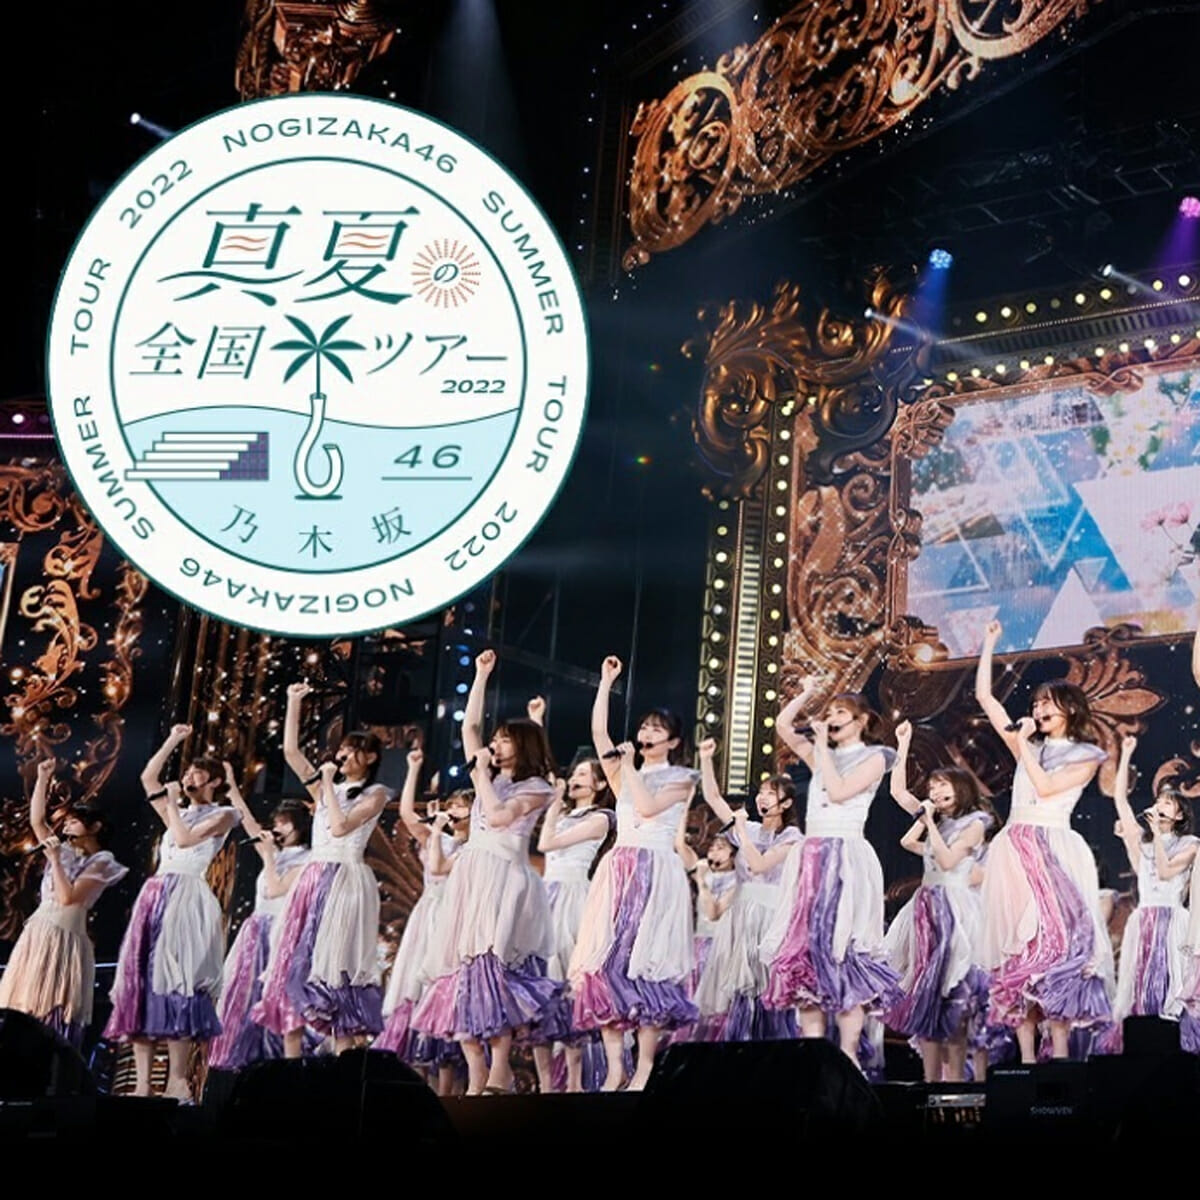 乃木坂46、全国ツアー神宮公演が“1日だけ”プレミア化の事情